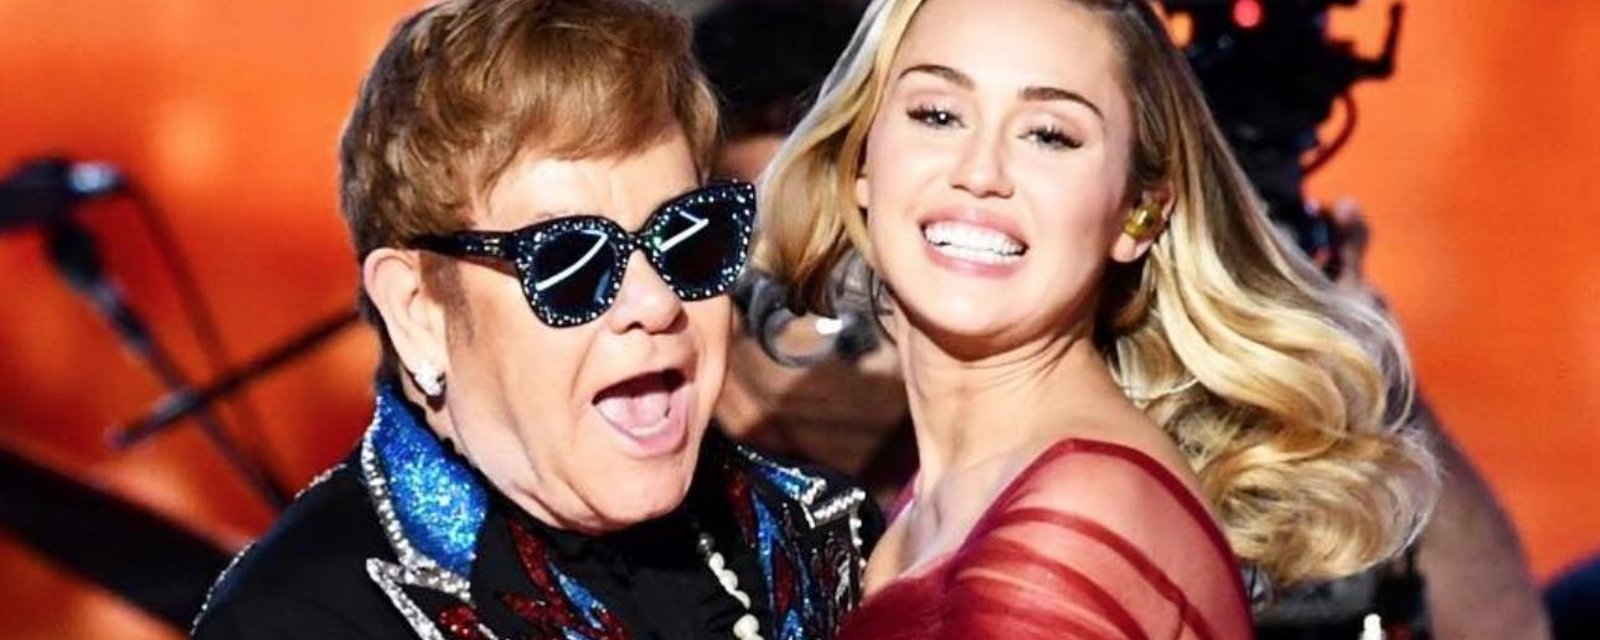 Les robes de Miley Cyrus et Lady Gaga volent la vedette sur le tapis rouge des Grammys!